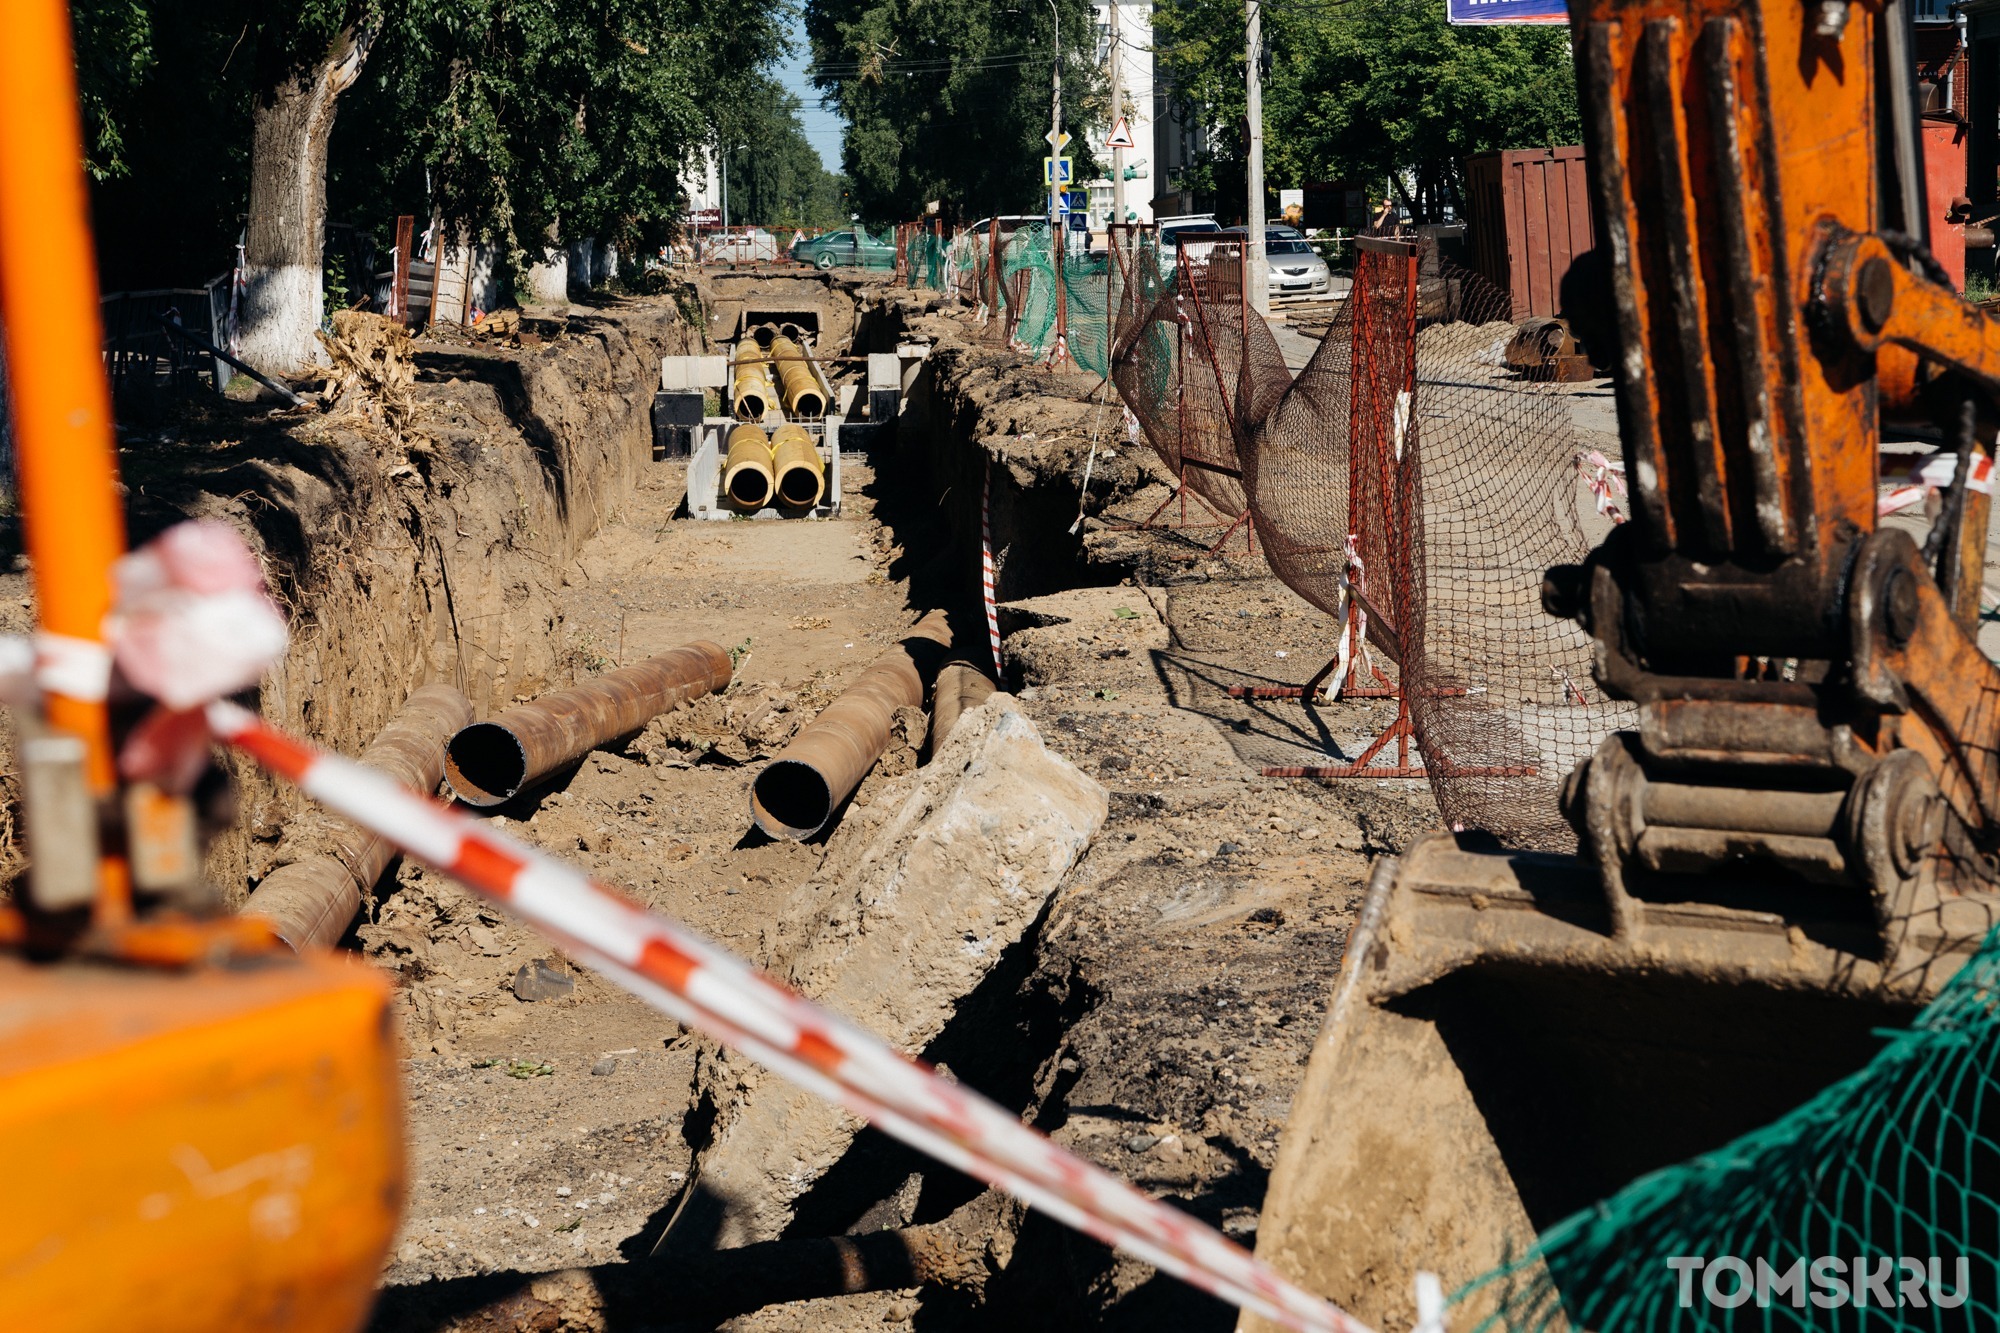 Докопаться до светлого будущего. Как решить проблему коммунальных раскопок в Томске?